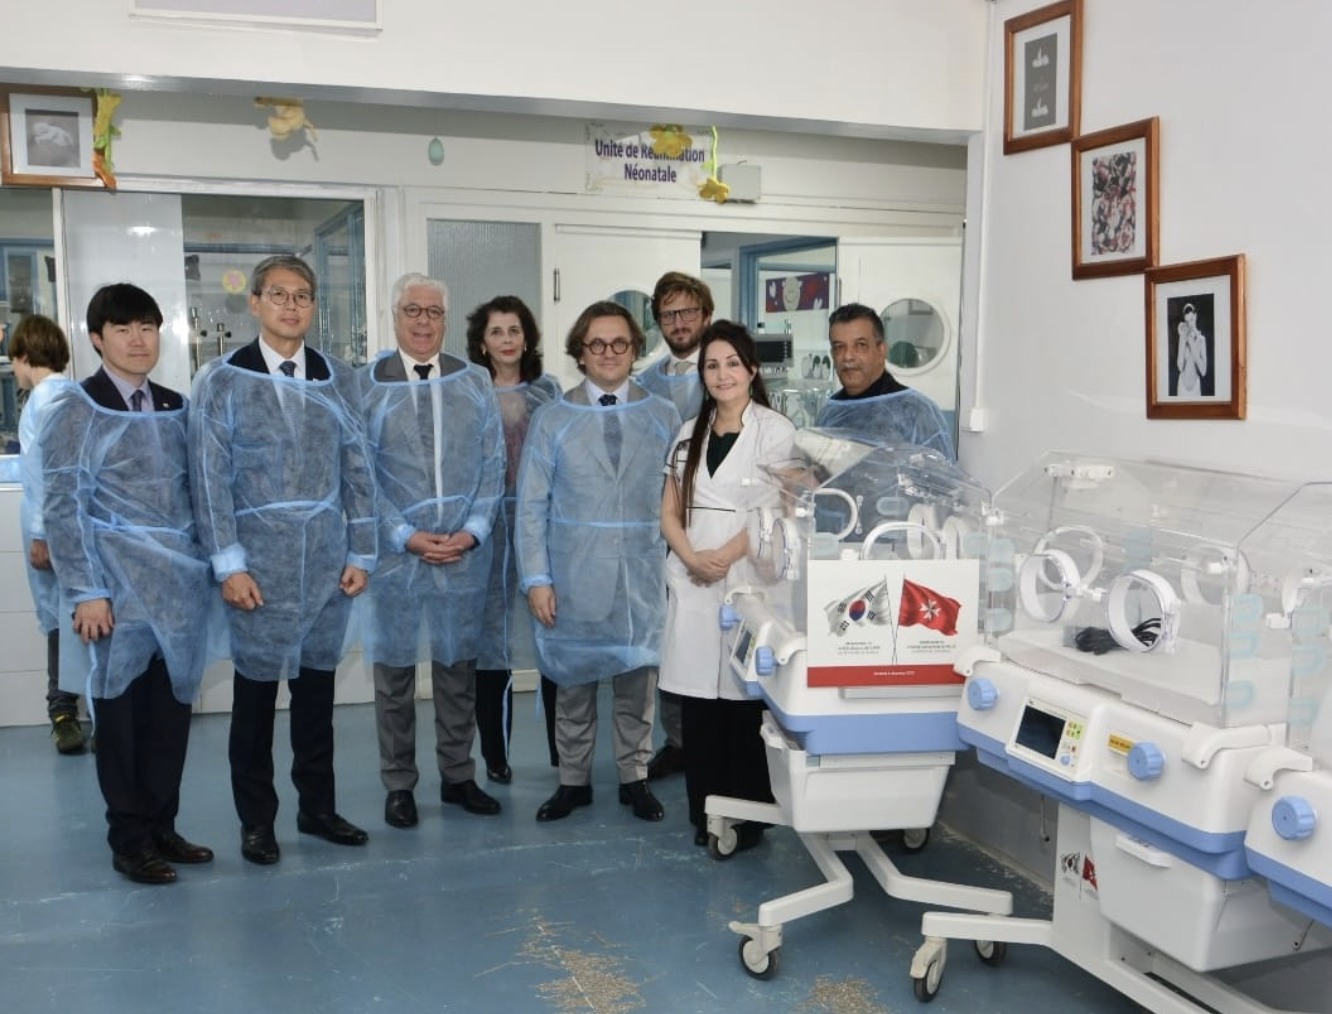 Les ambassades de la République de Corée et de l’Ordre de Malte remettent les premières couveuses destinées à différents hôpitaux de la région de Rabat